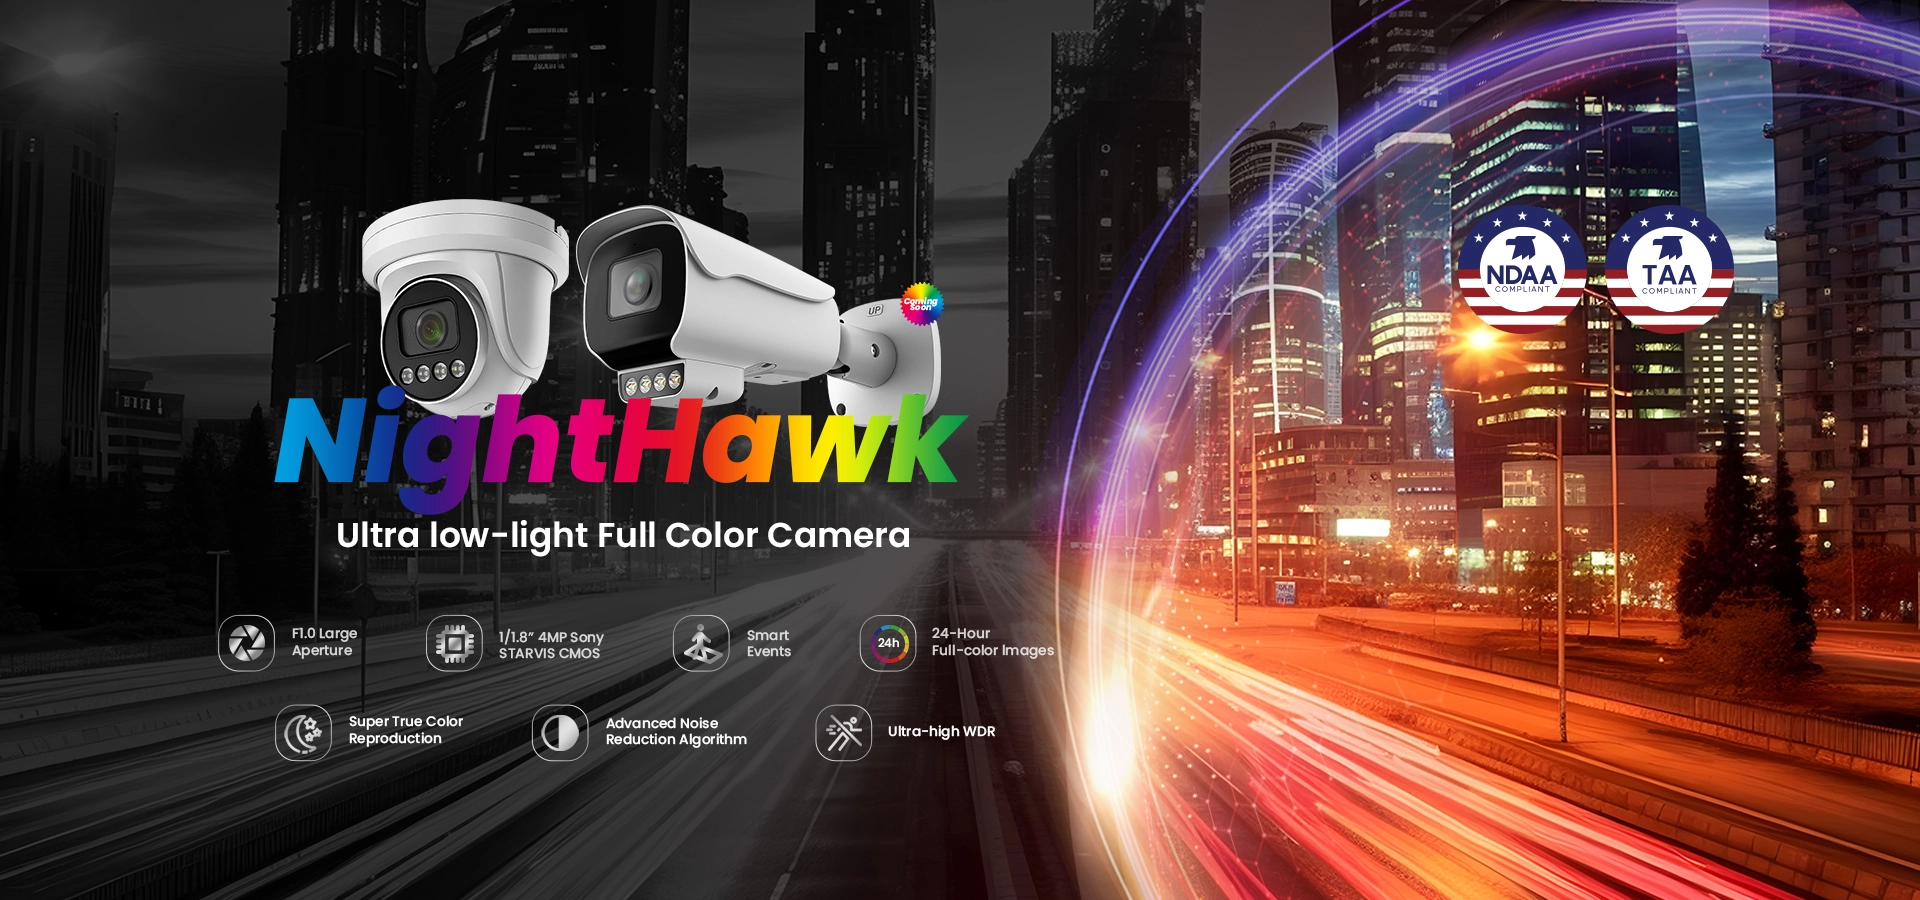 Máy ảnh viên đạn đủ màu thông minh siêu nhẹ sunell Nighthawk-Chụp ảnh rõ nét trong môi trường ánh sáng cực thấp, tất cả đều không cần ánh sáng bổ sung làm mờ chuyển động tối thiểu.